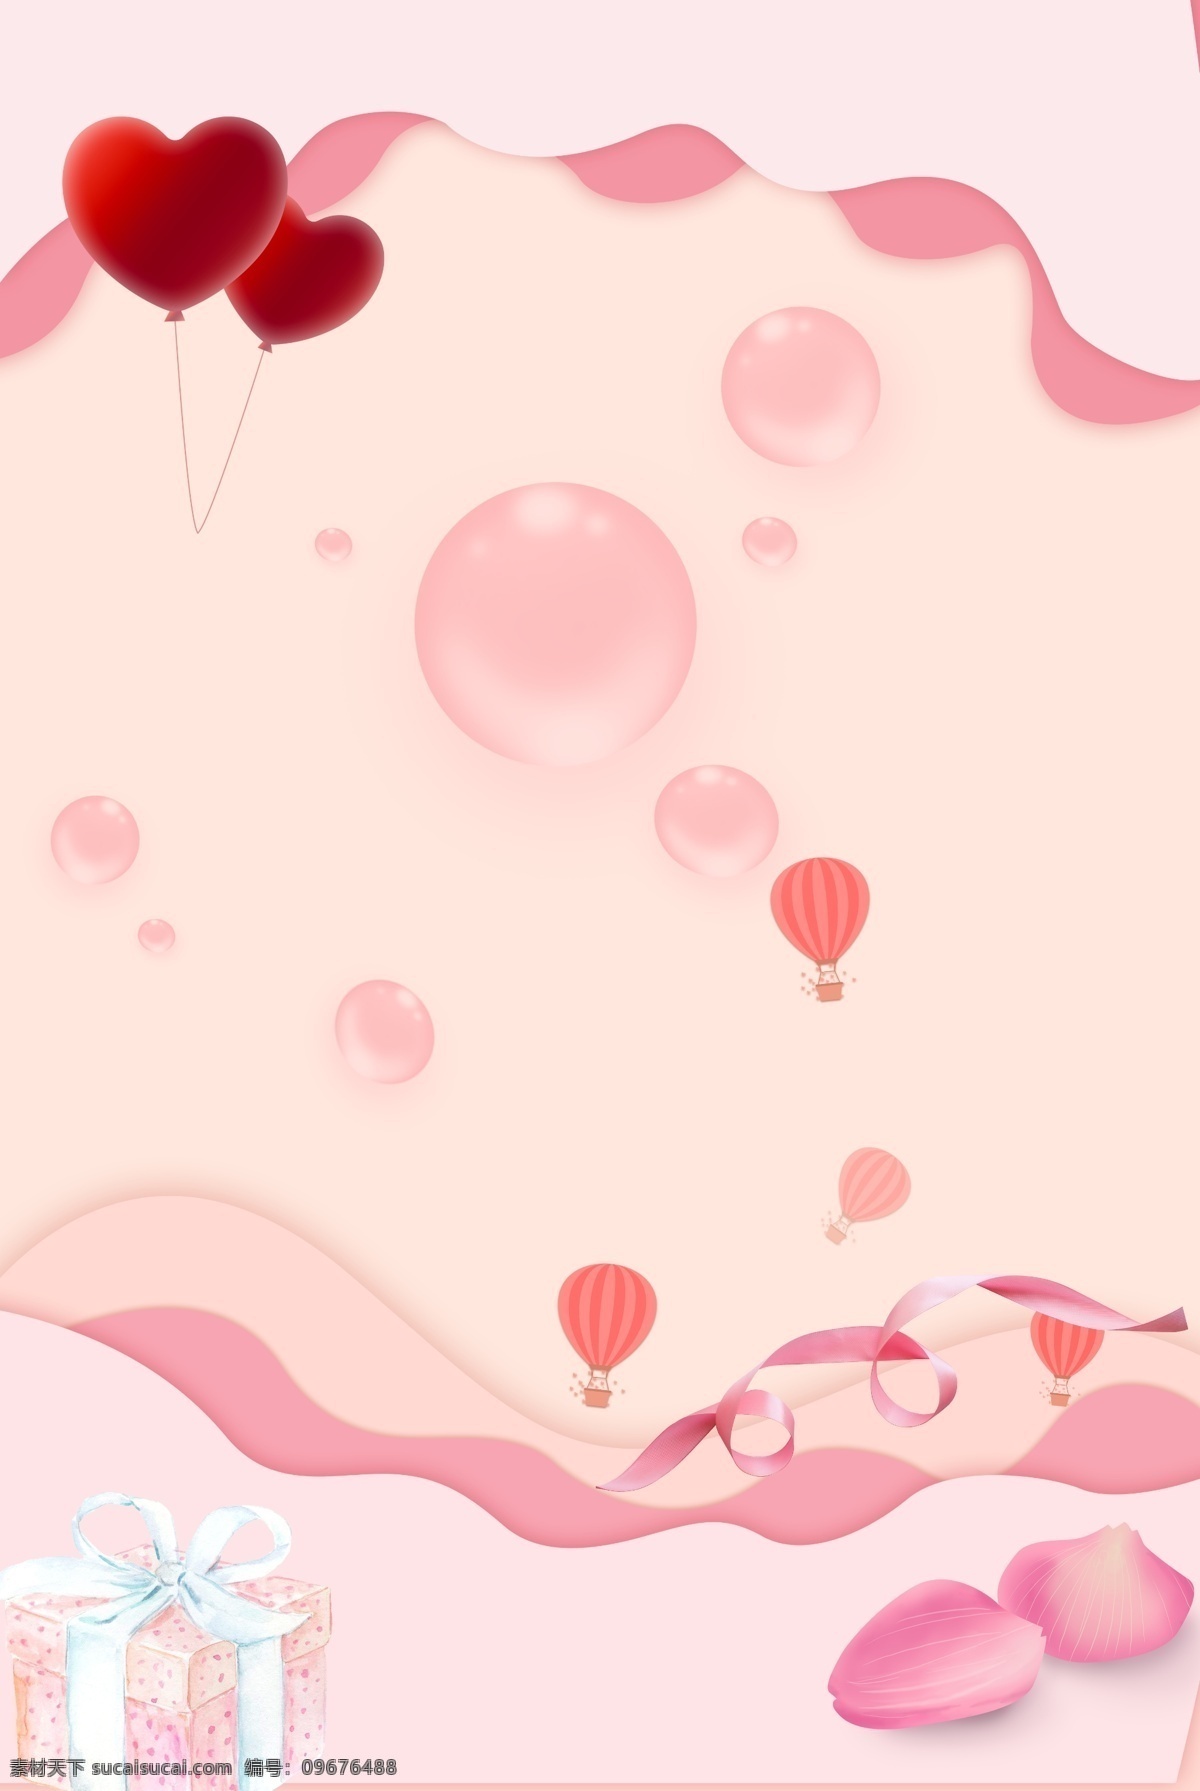 520 情侣 礼盒 海报 背景 图 背景图 粉色 可爱 主题